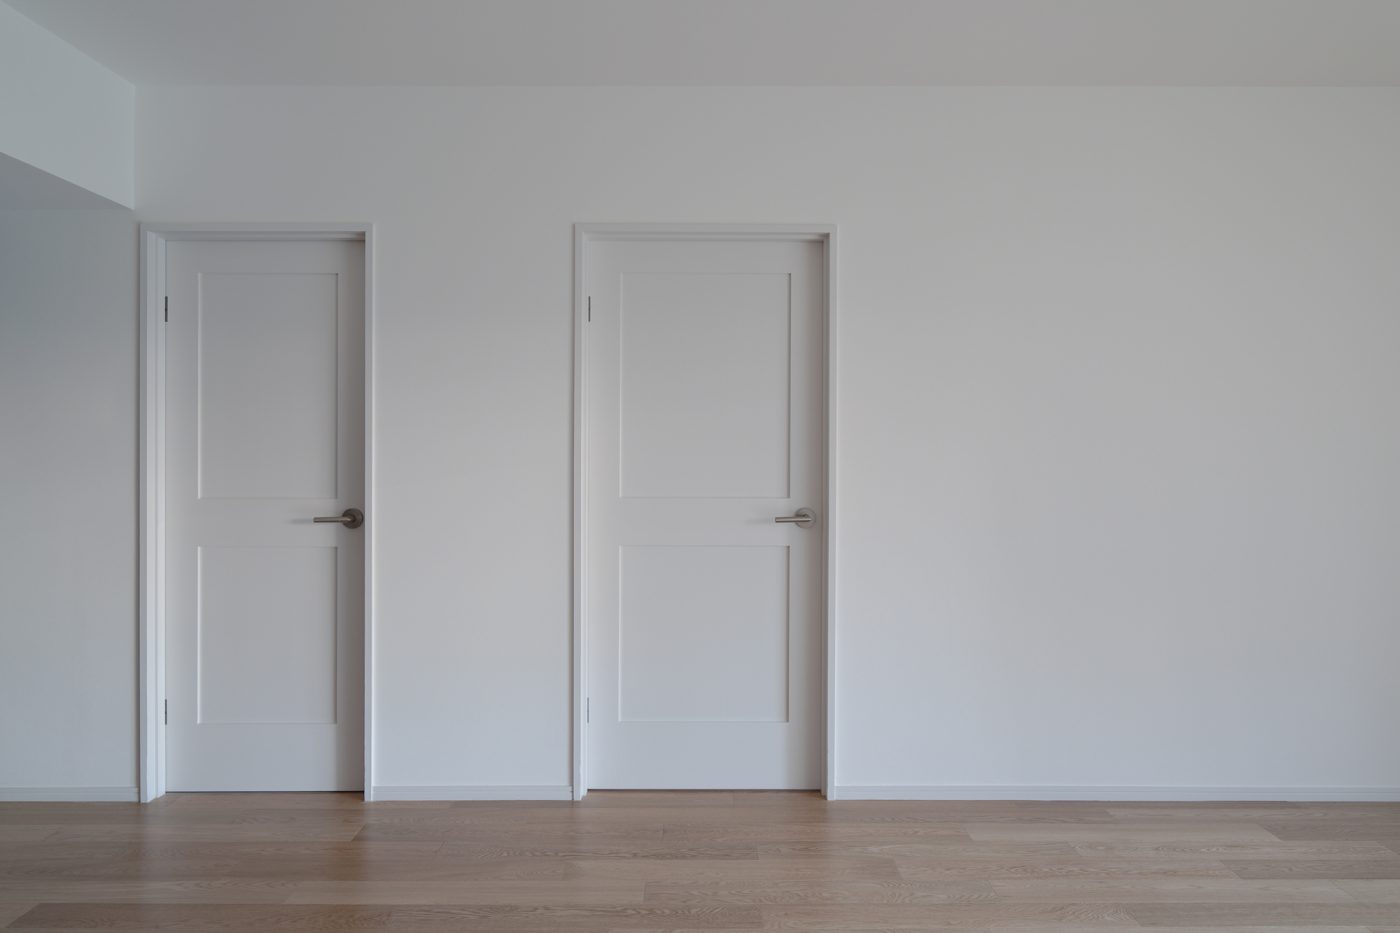 スッキリとしたフラットな白壁に、白いドアを合わせる。ドアらしいフォルムが表情をつくります。
